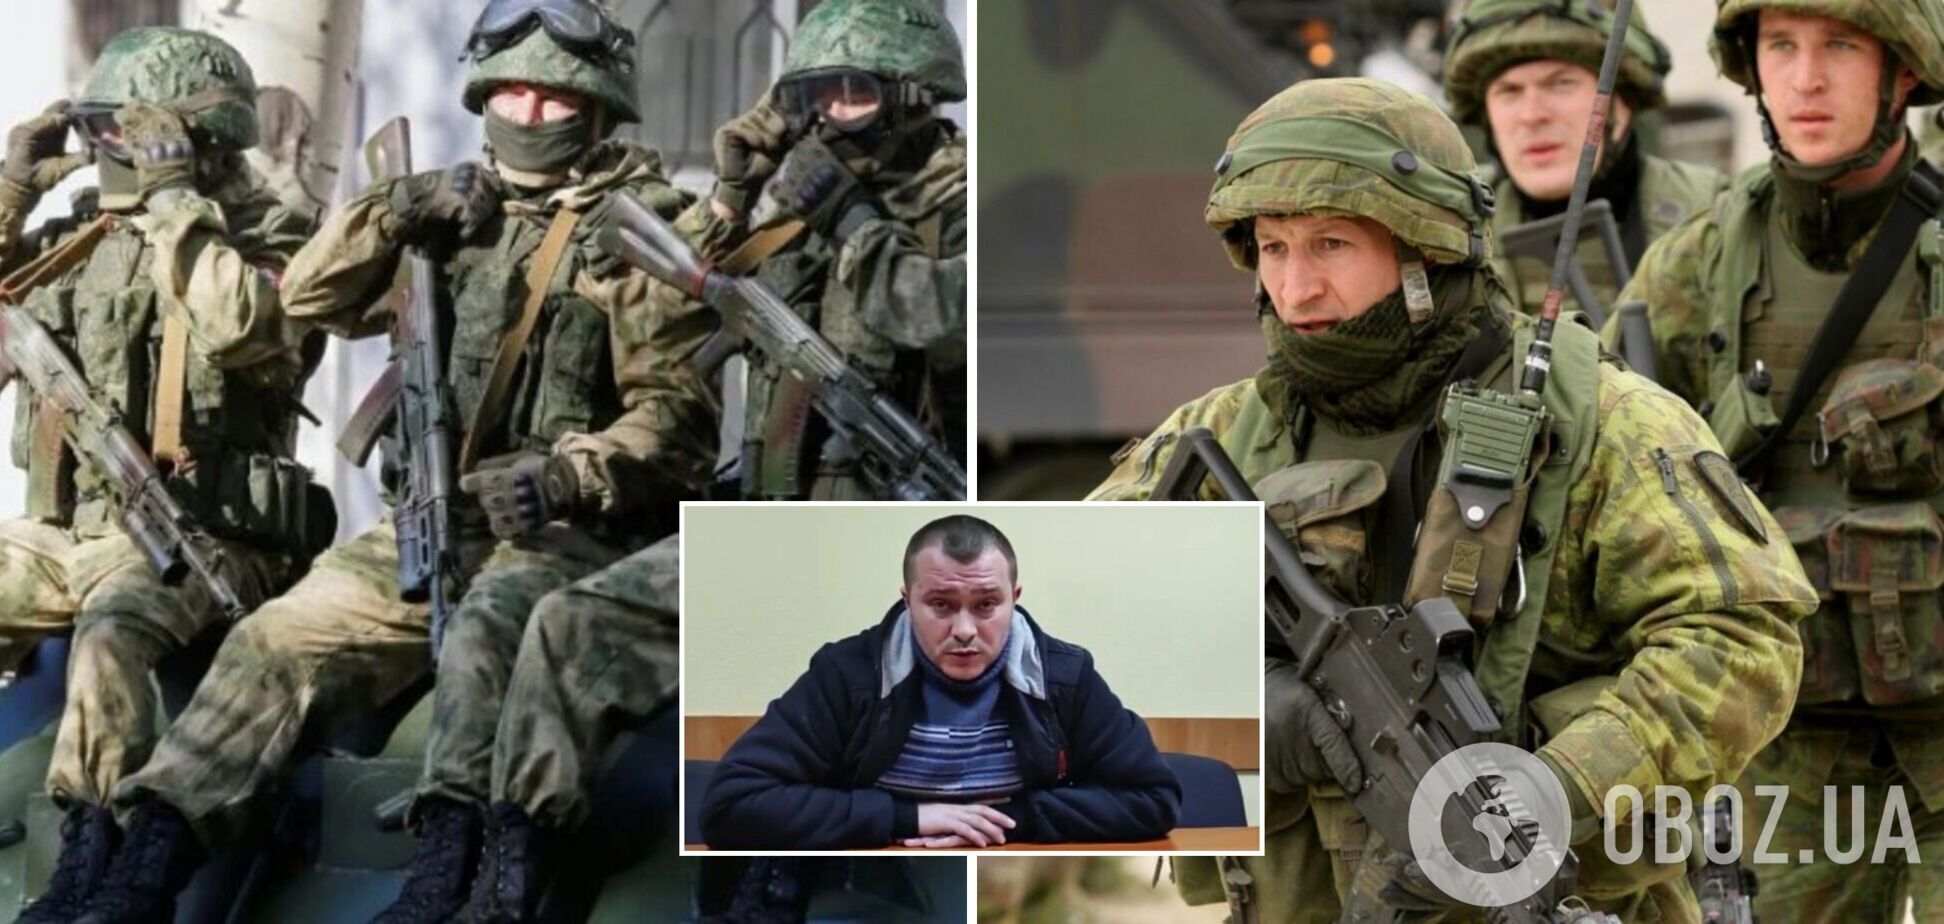 'Путин является террористом': бывший российский правоохранитель порвал паспорт РФ и заявил, что будет служить Украине. Видео